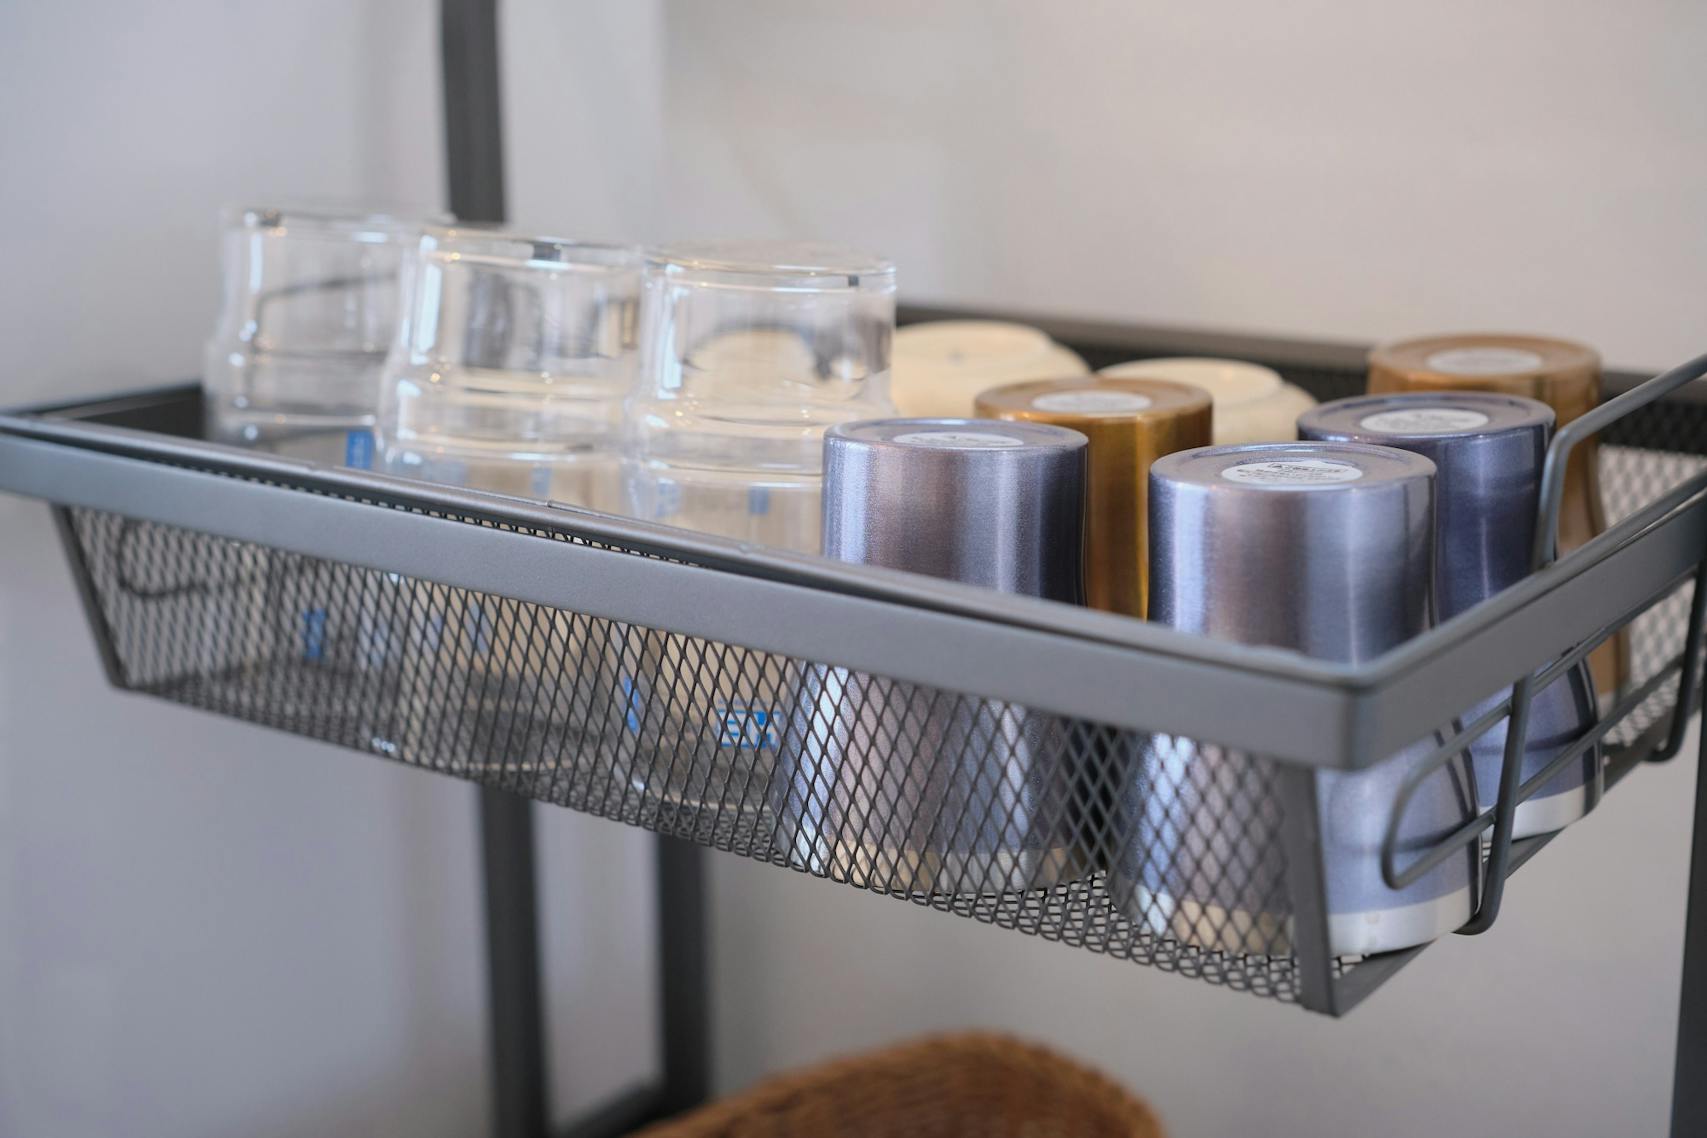 食器など Utensils and dishware